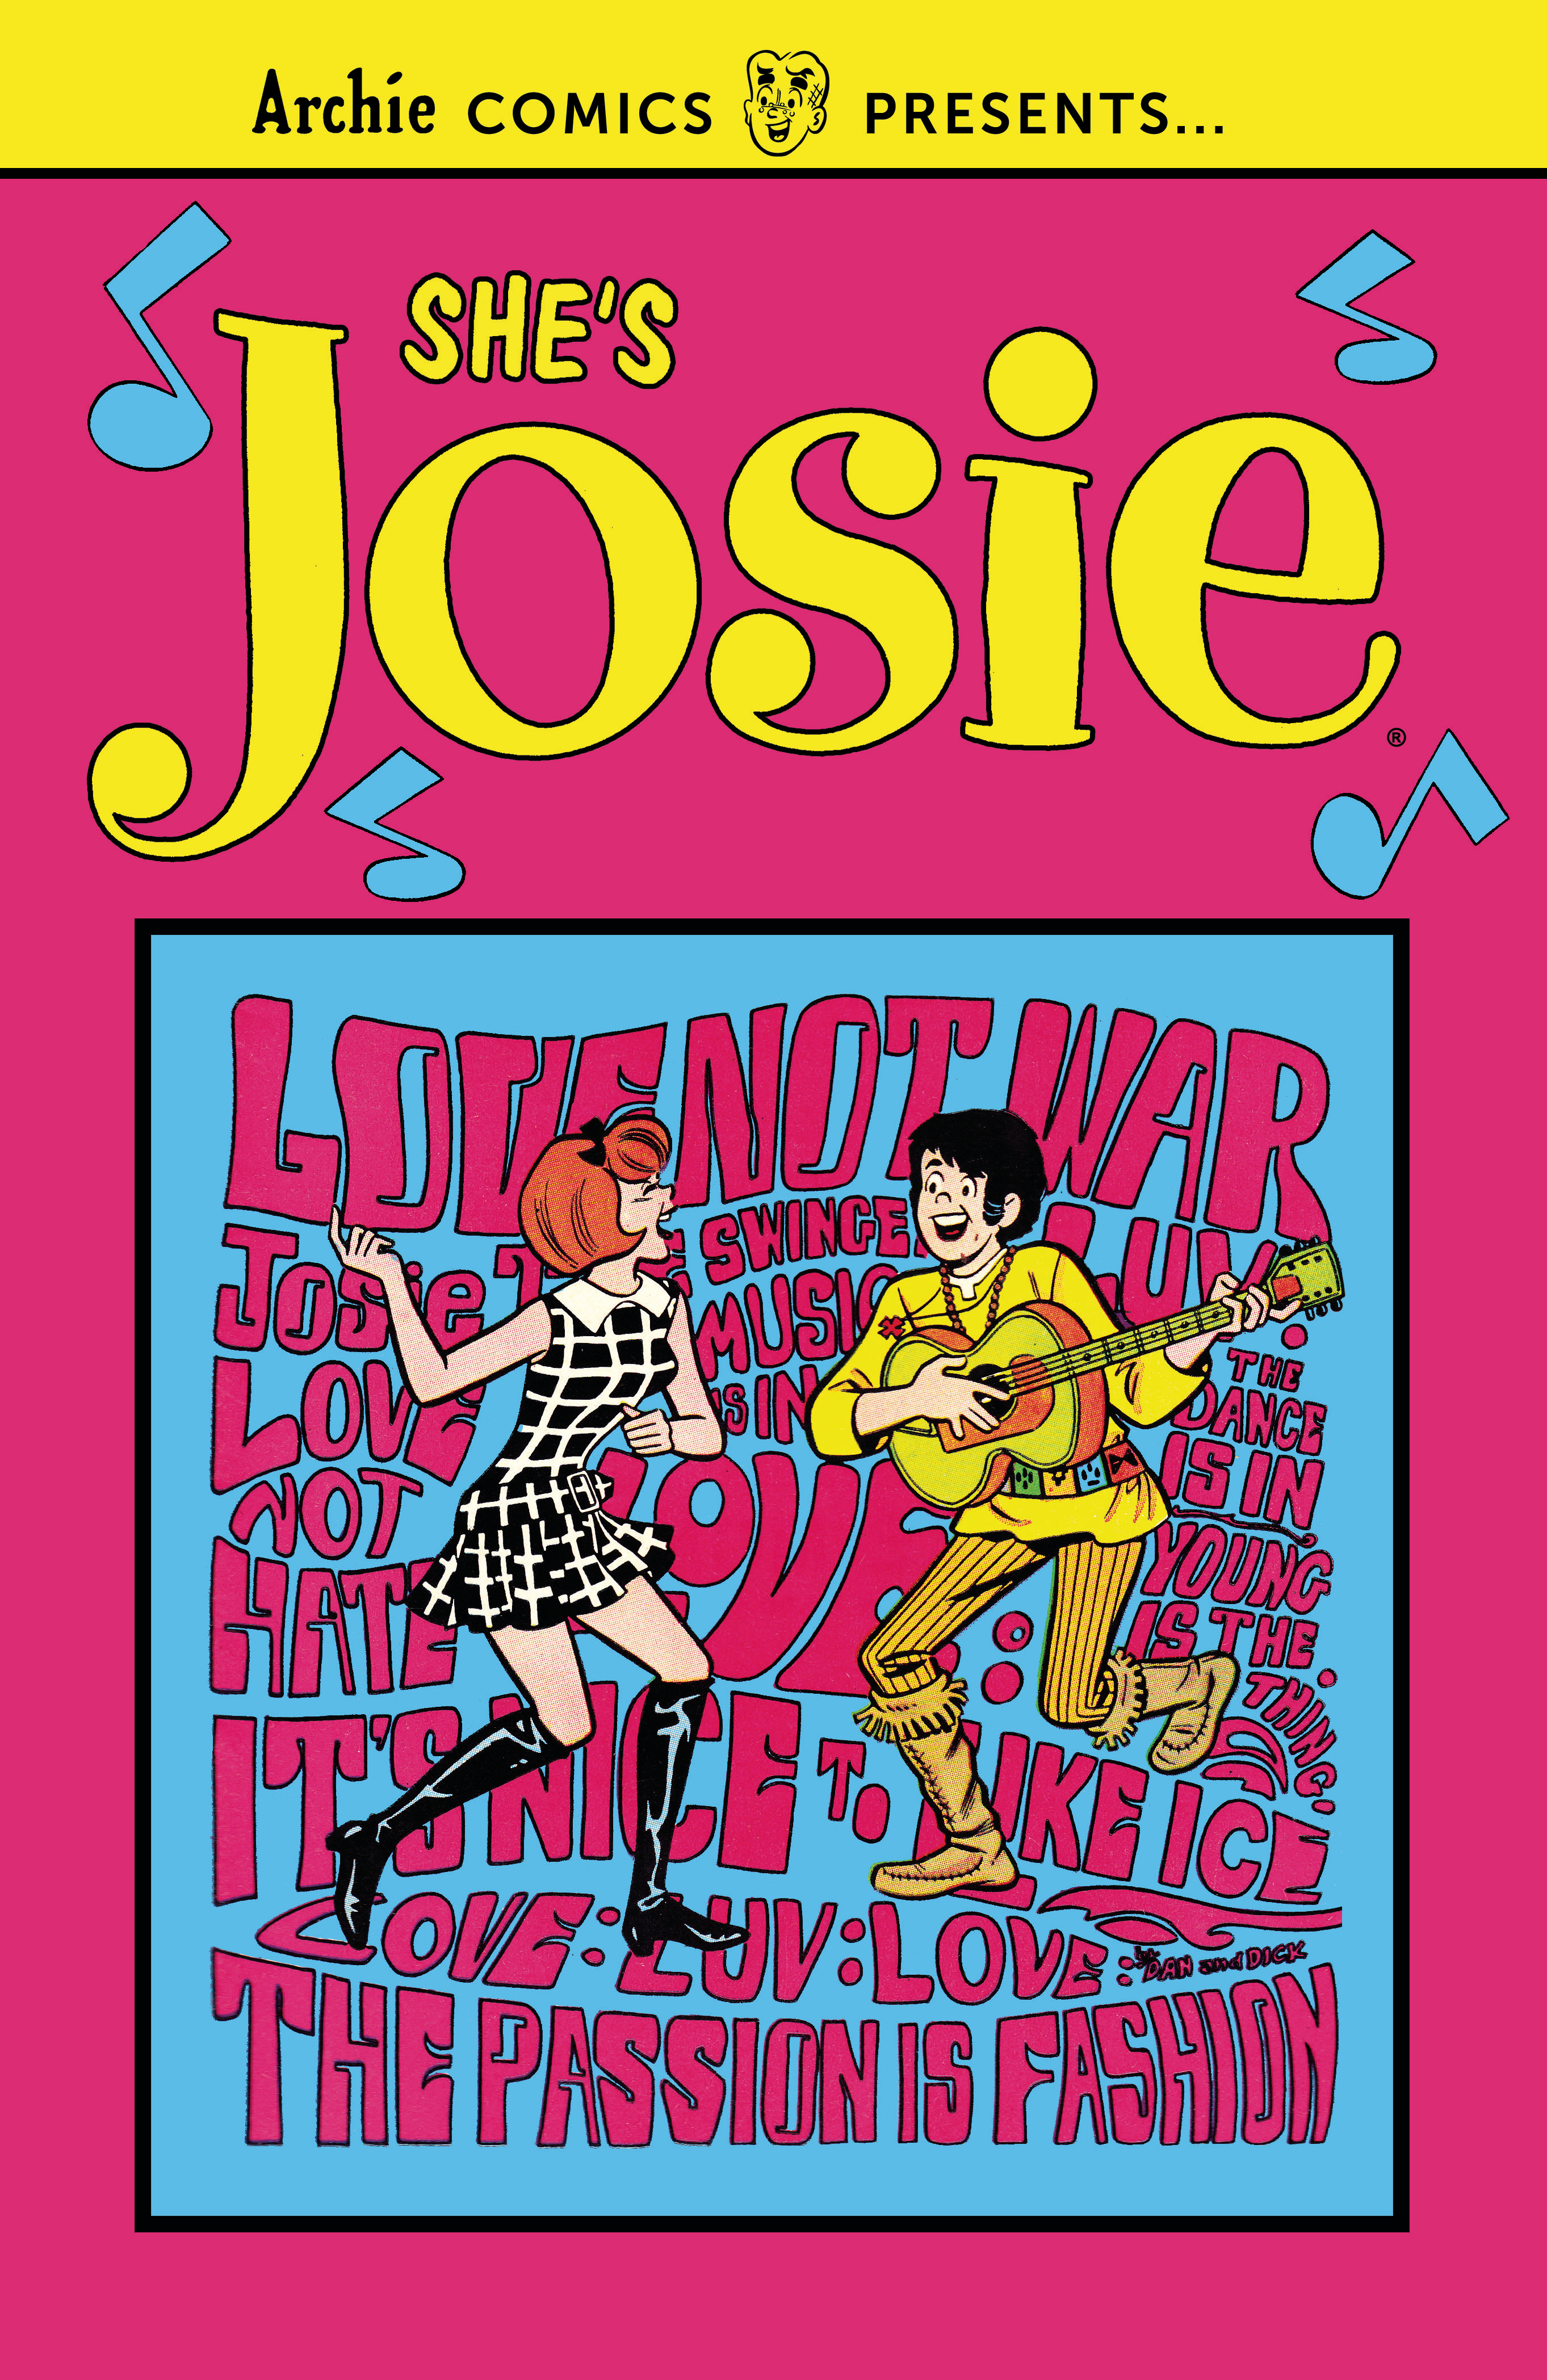 She's Josie Graphic Novel